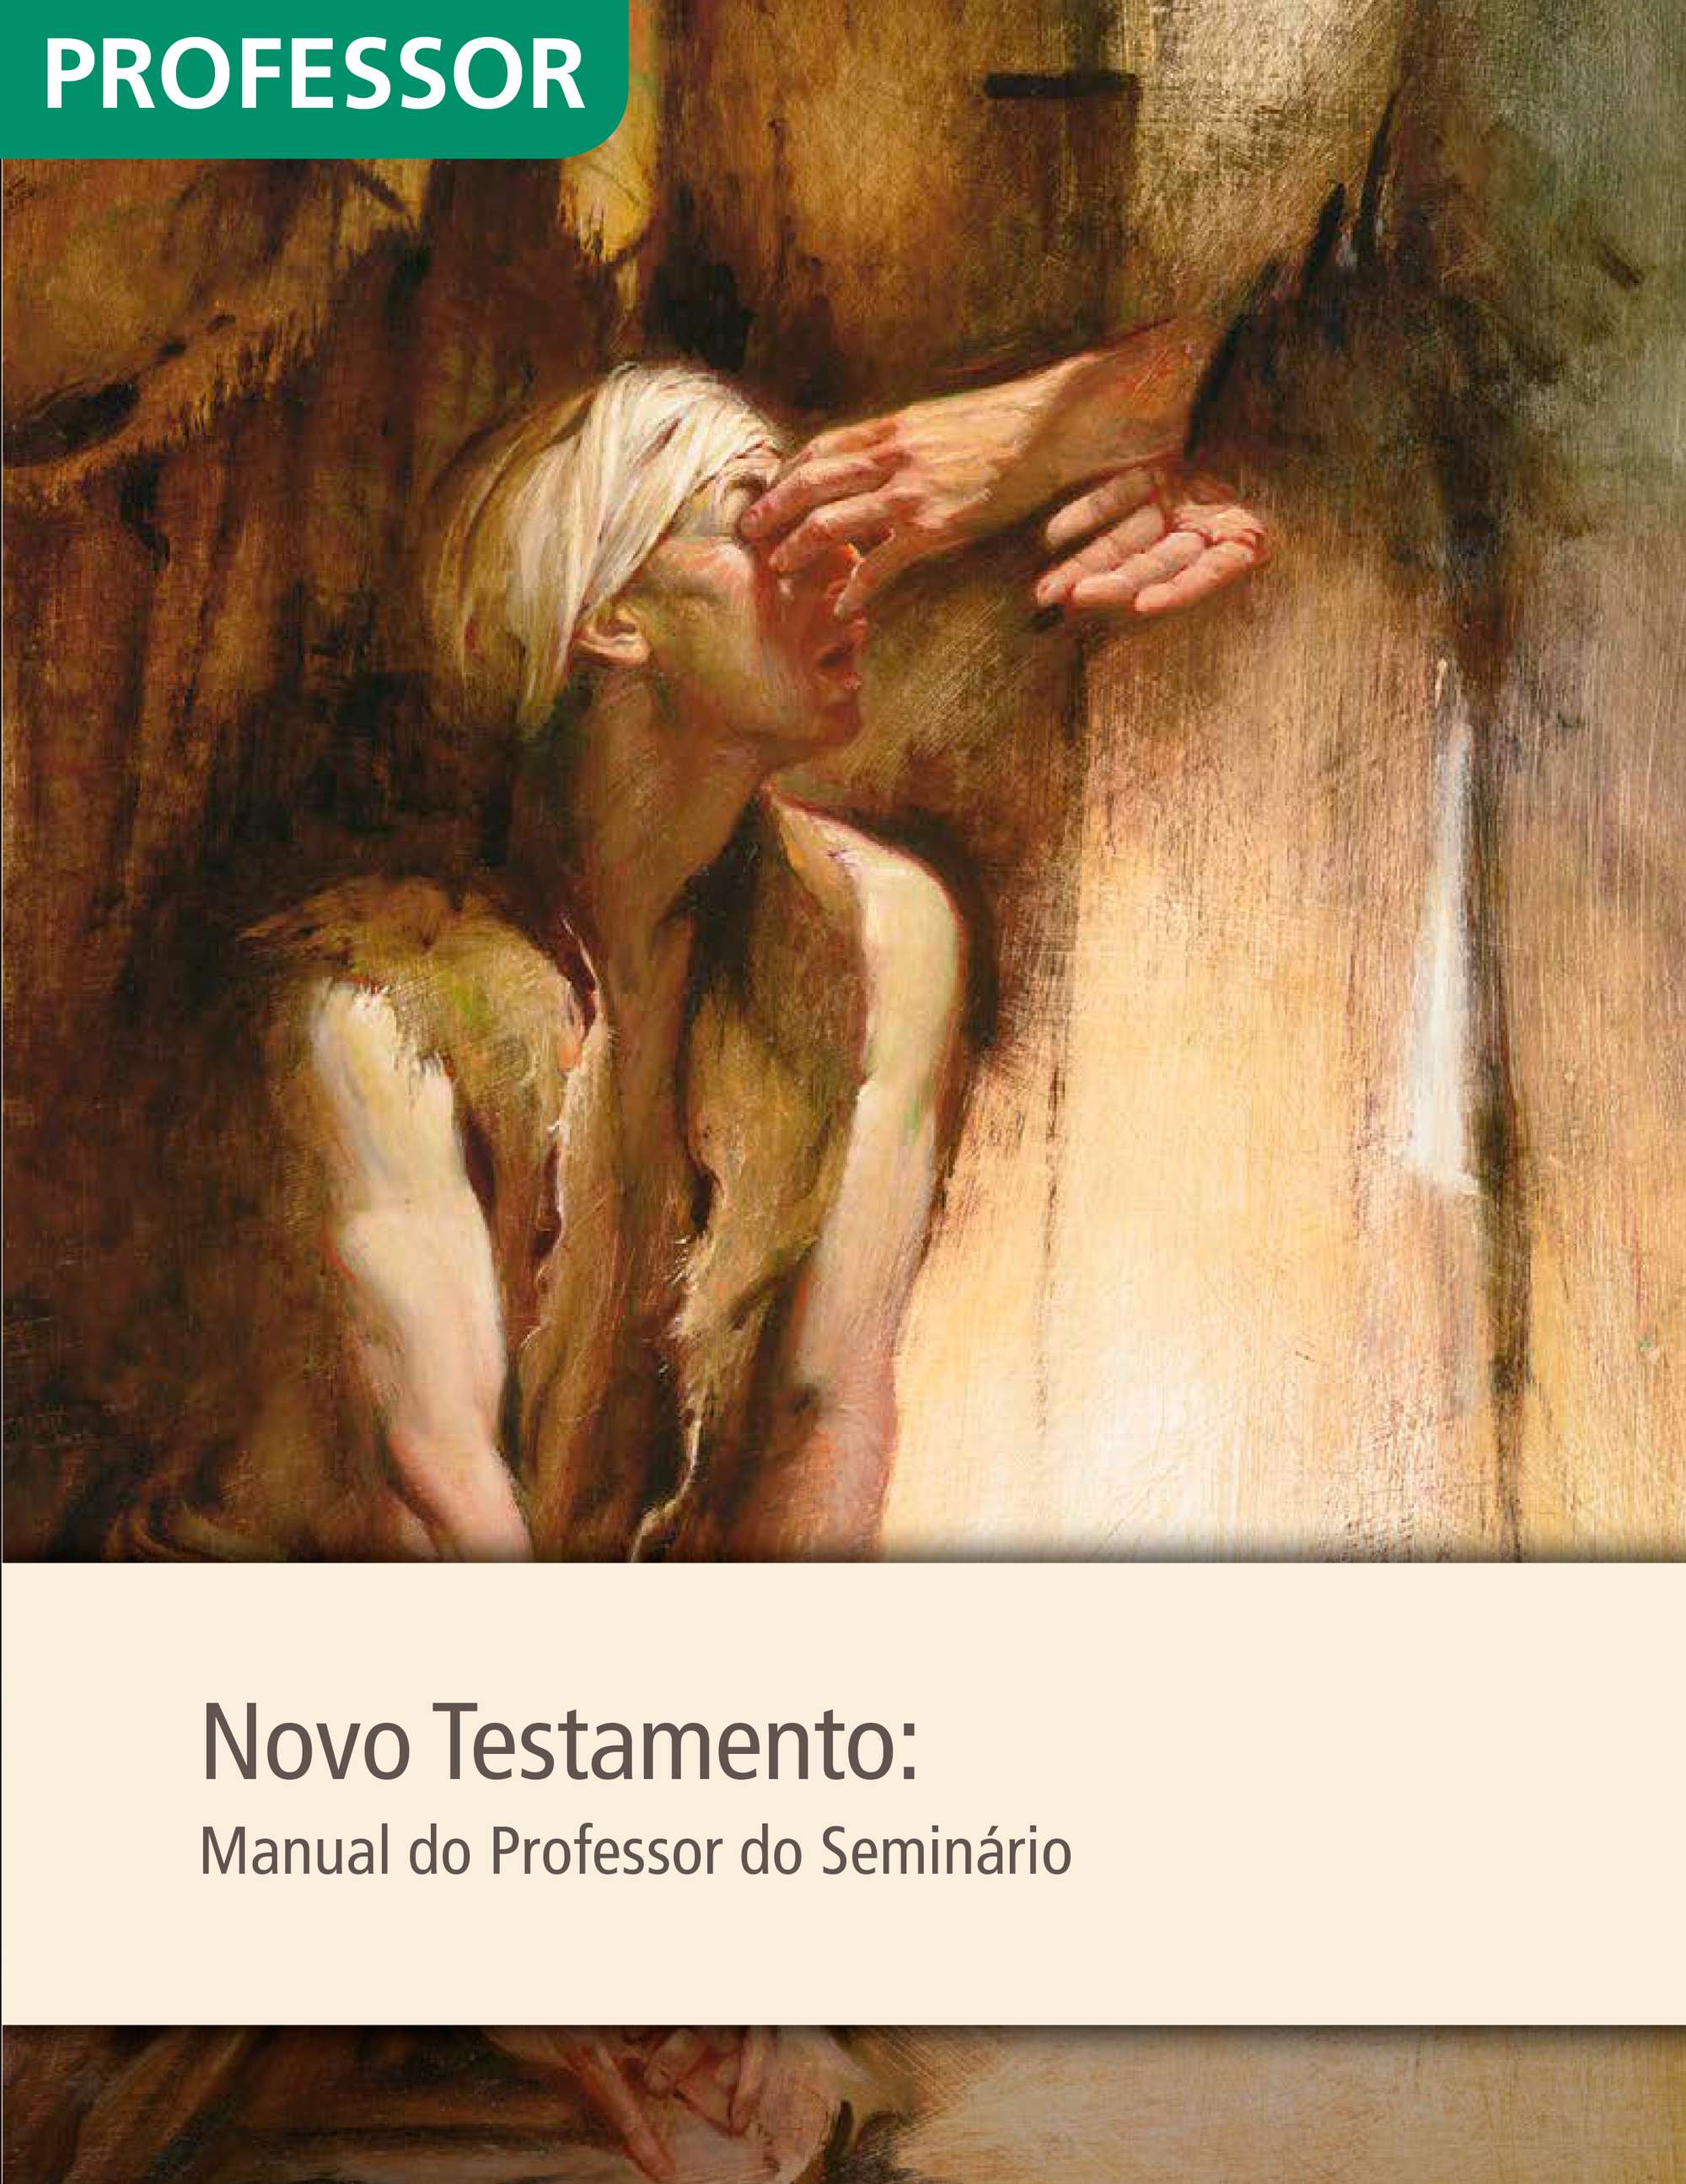 Novo Testamento: Manual do Professor do Seminário